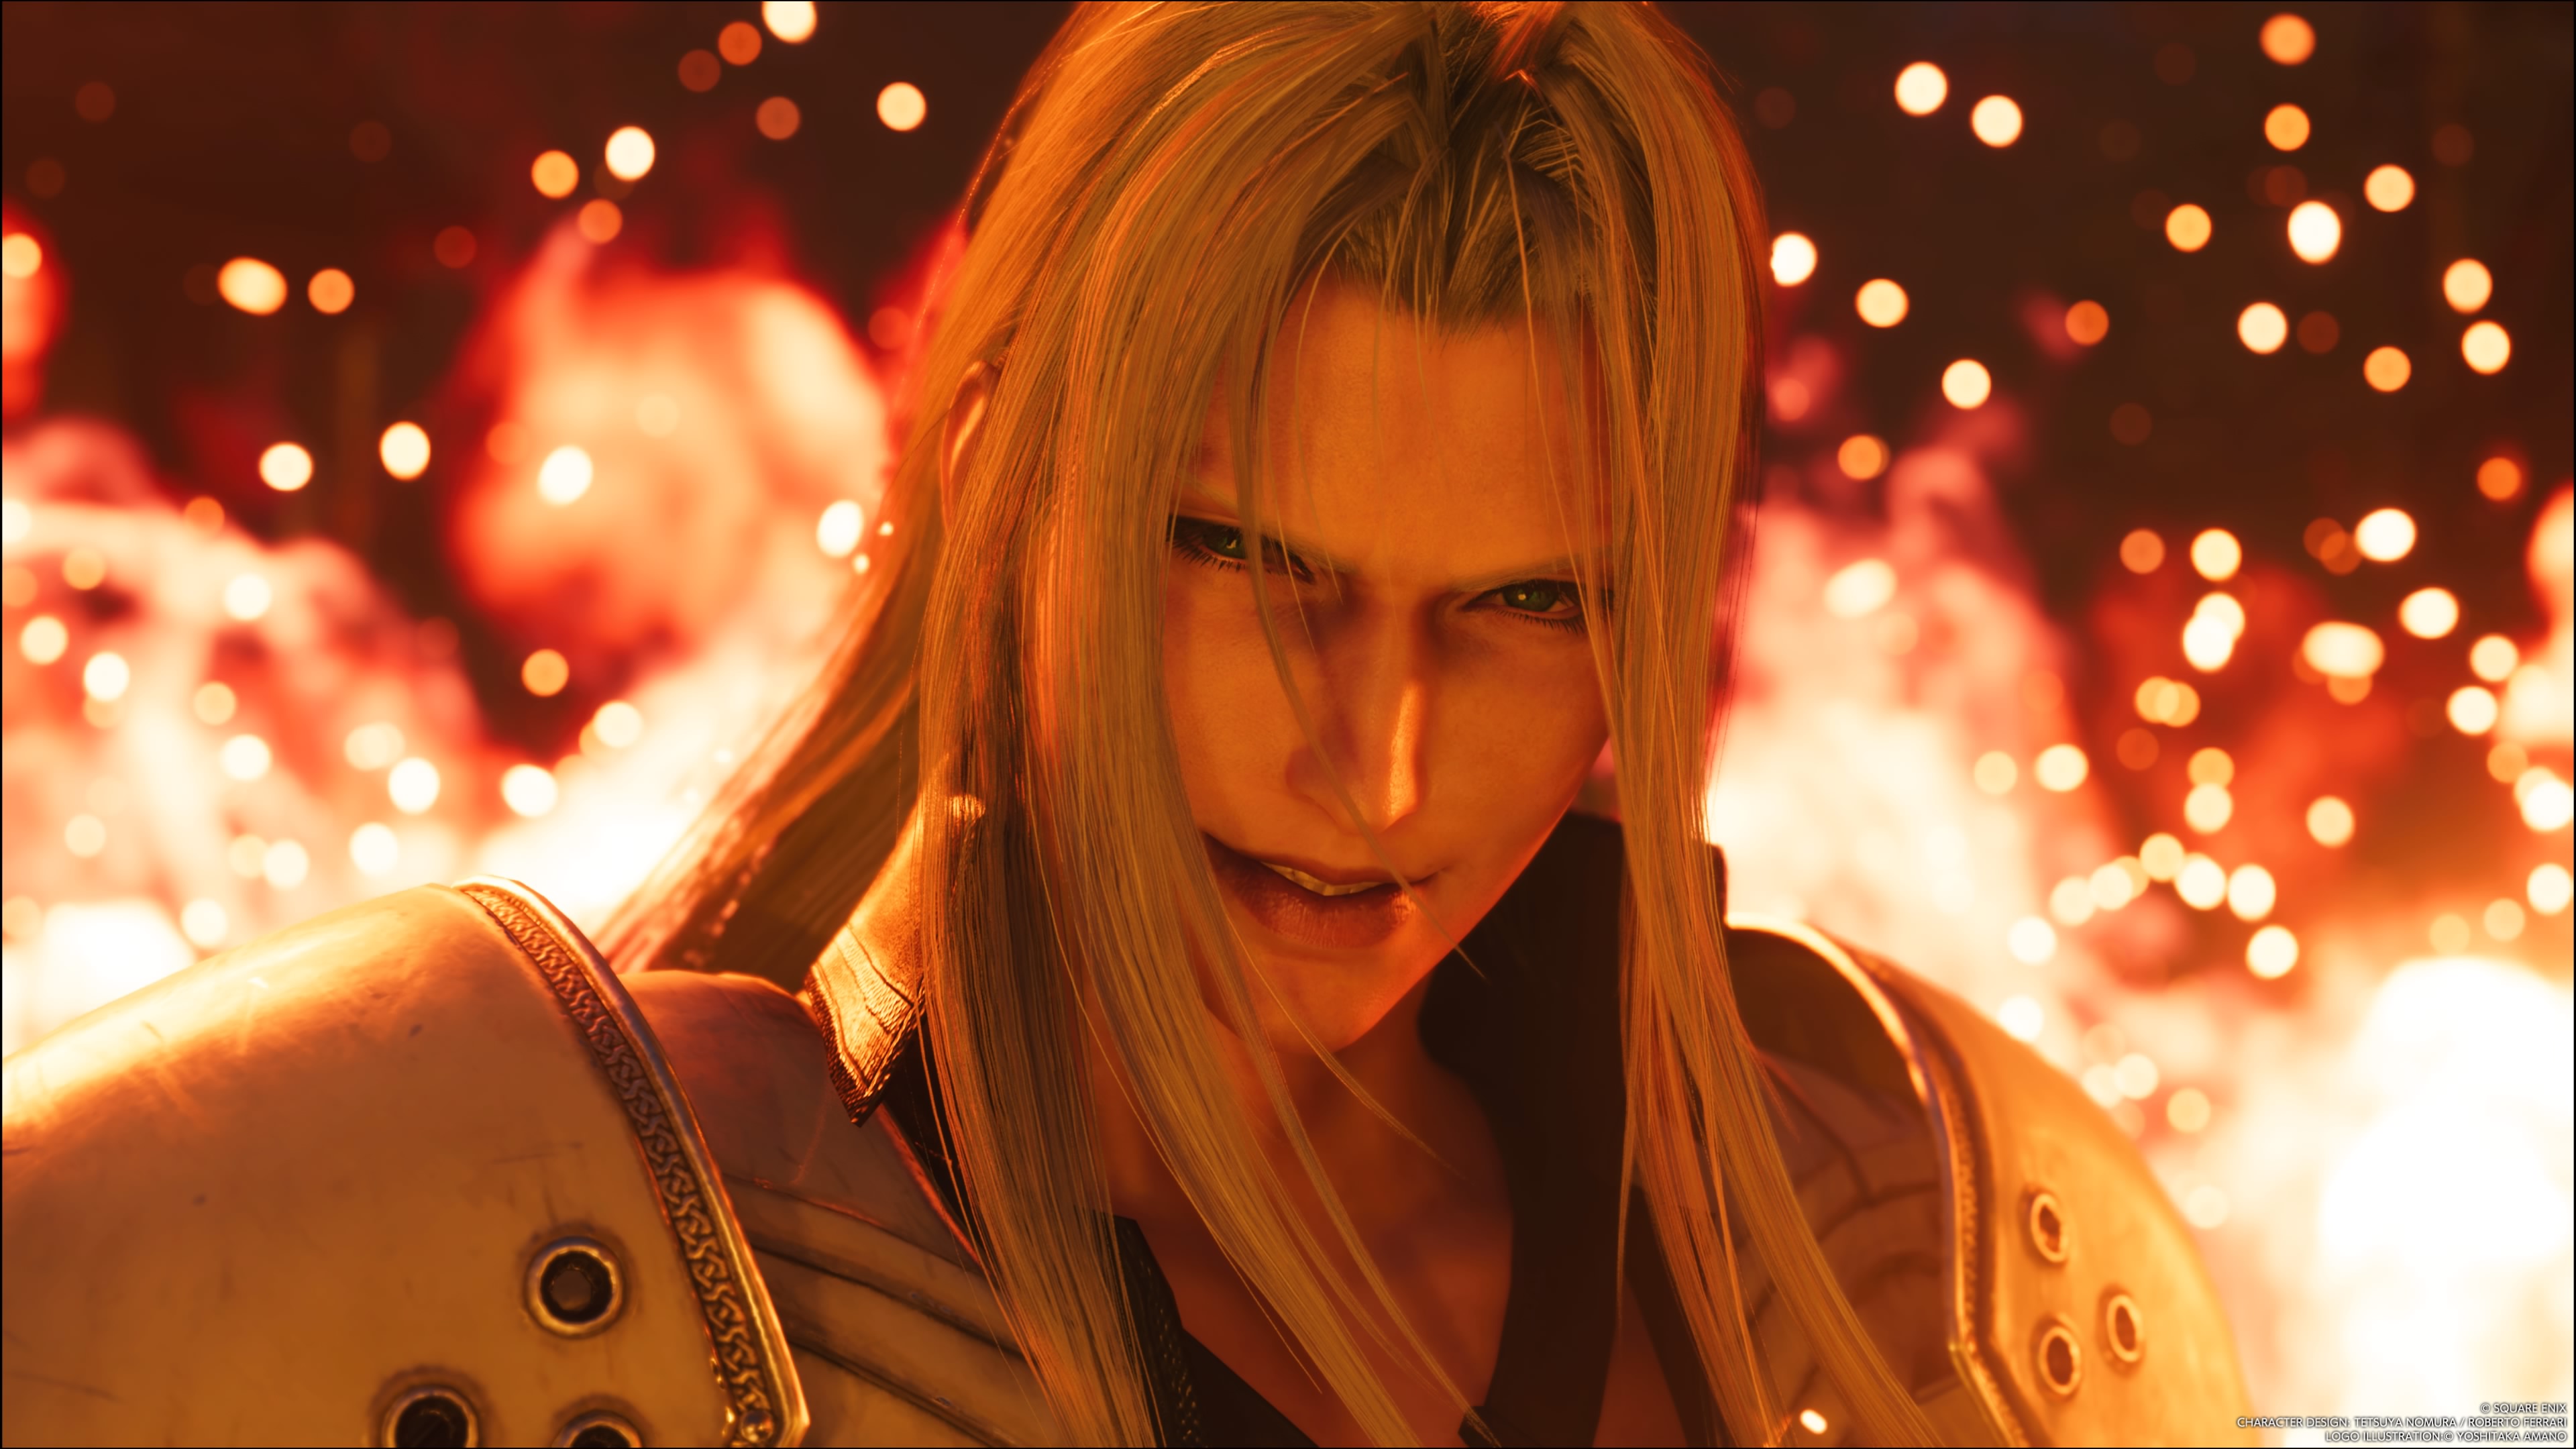 Final Fantasy VII Rebirth: la demo è stata aggiornata con una